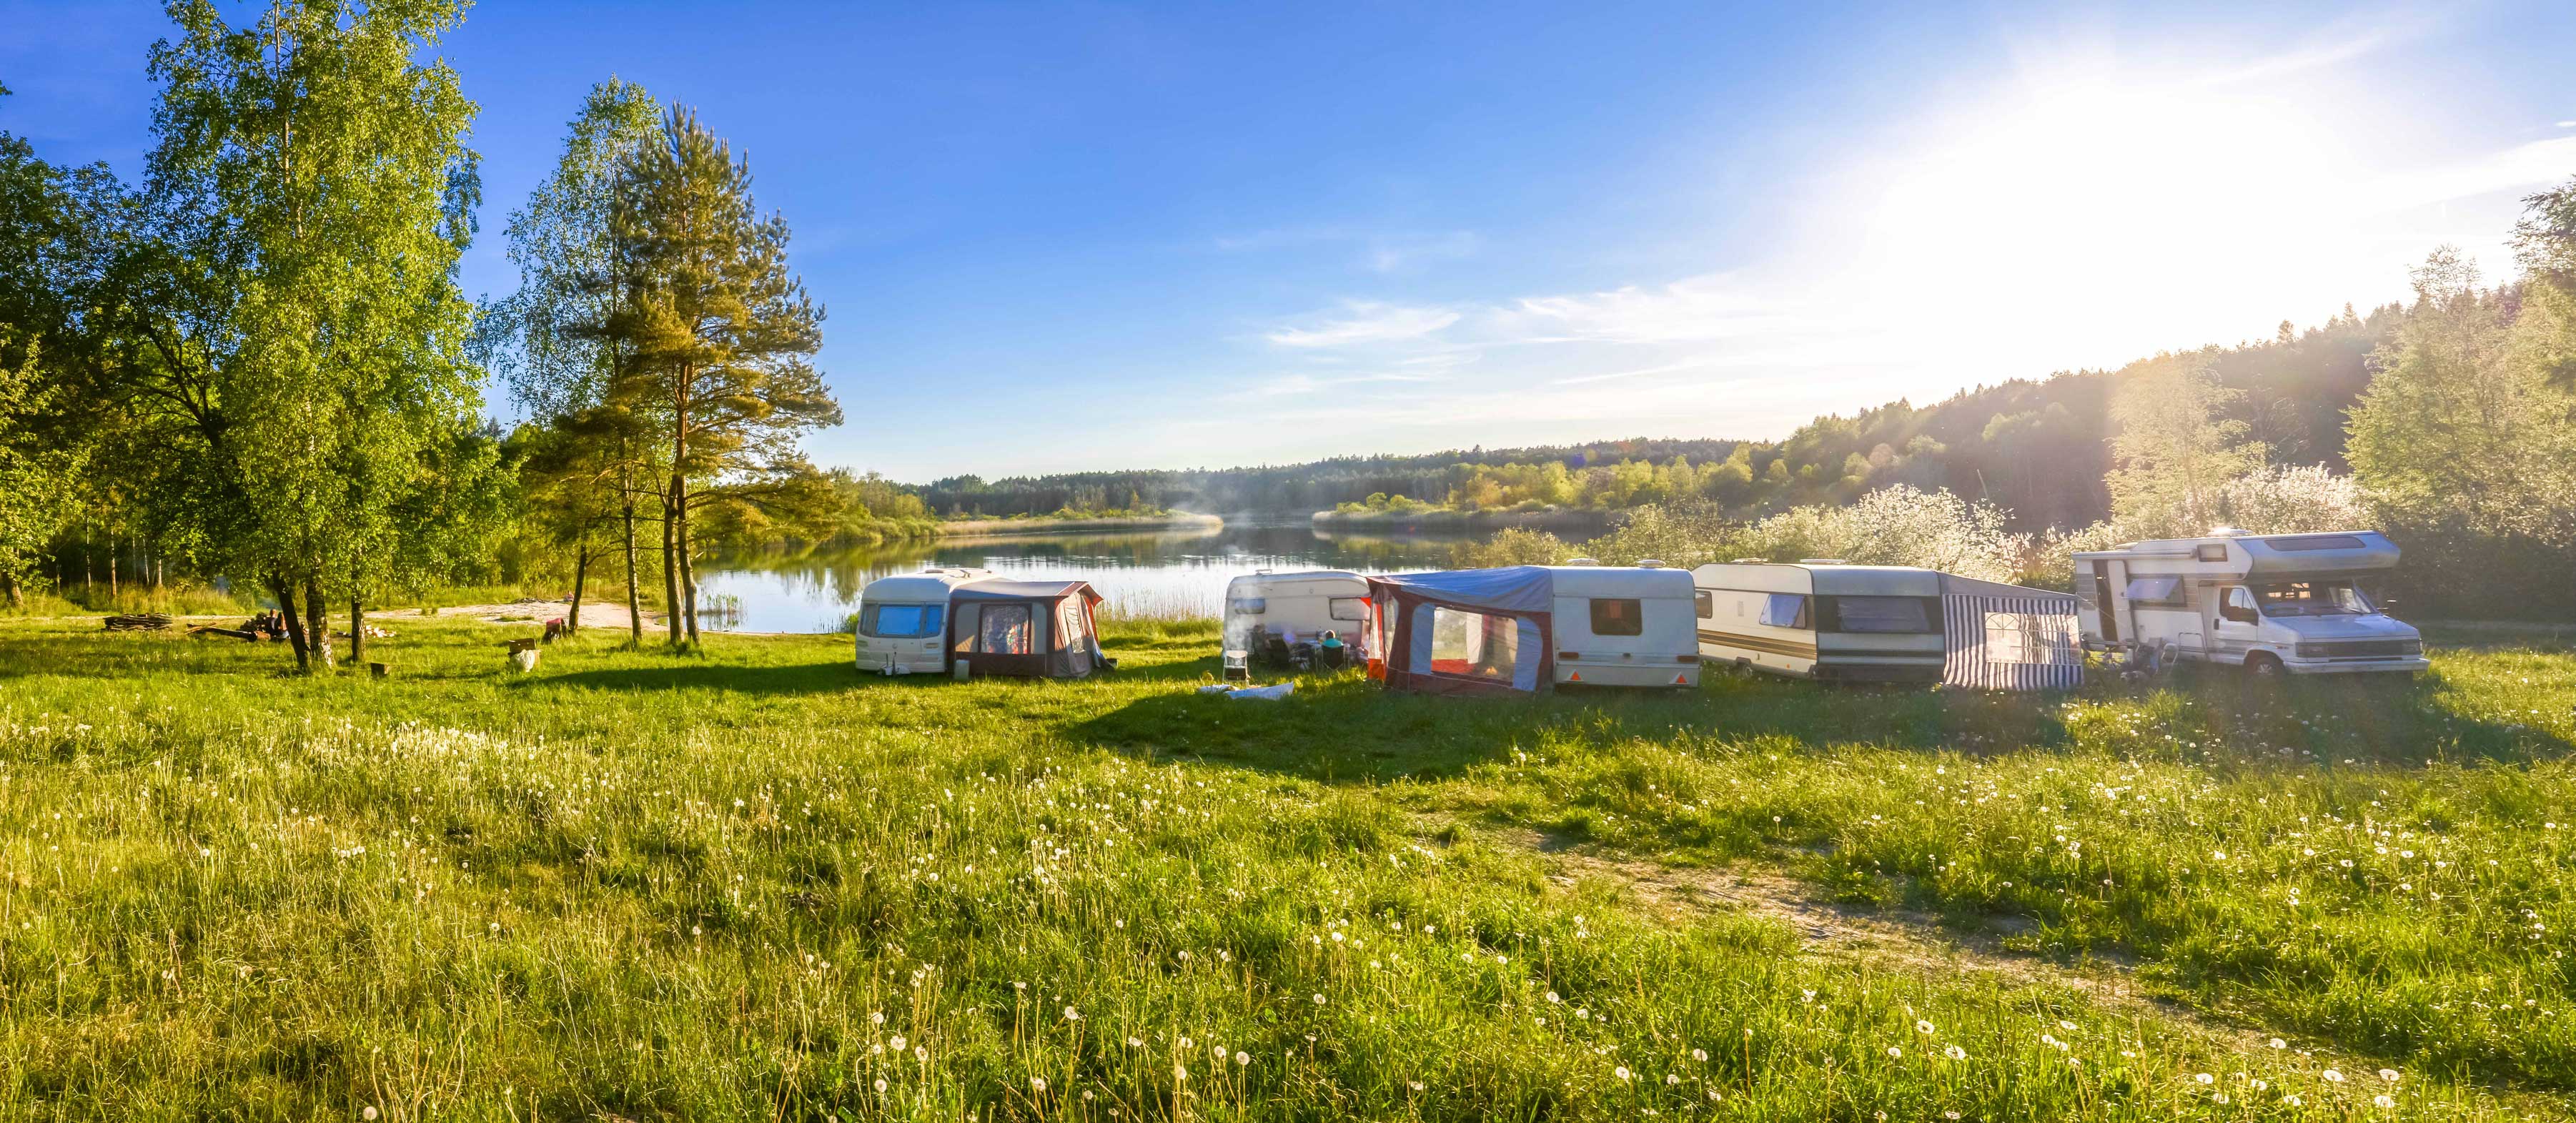 Das Bild zeigt einen Campingplatz an einem See, wo einige Wohnwagen parken